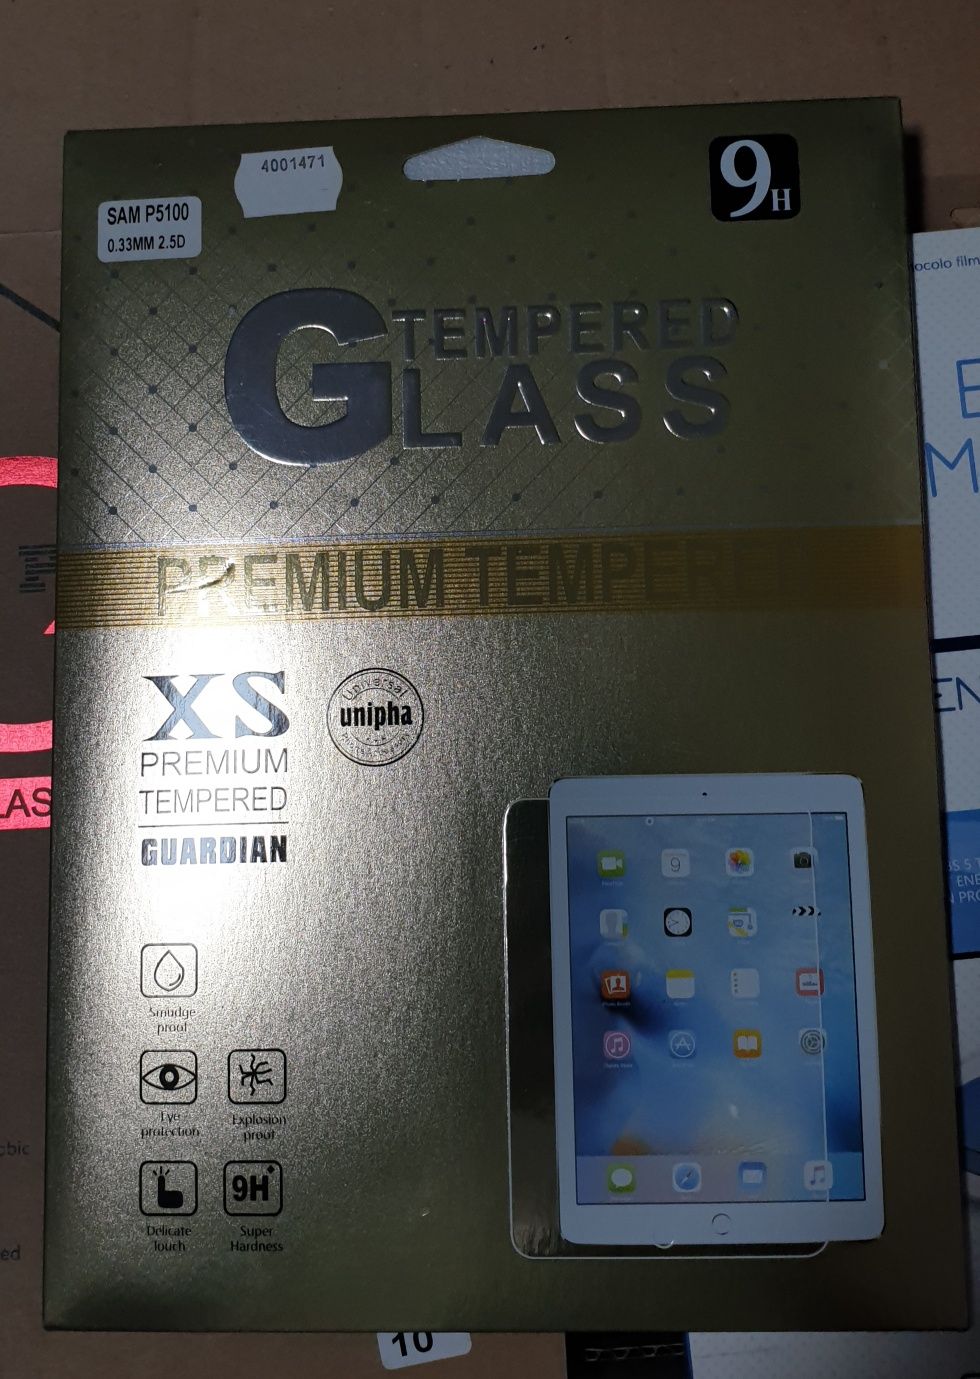 Pelicula vidro temperado universal tablet